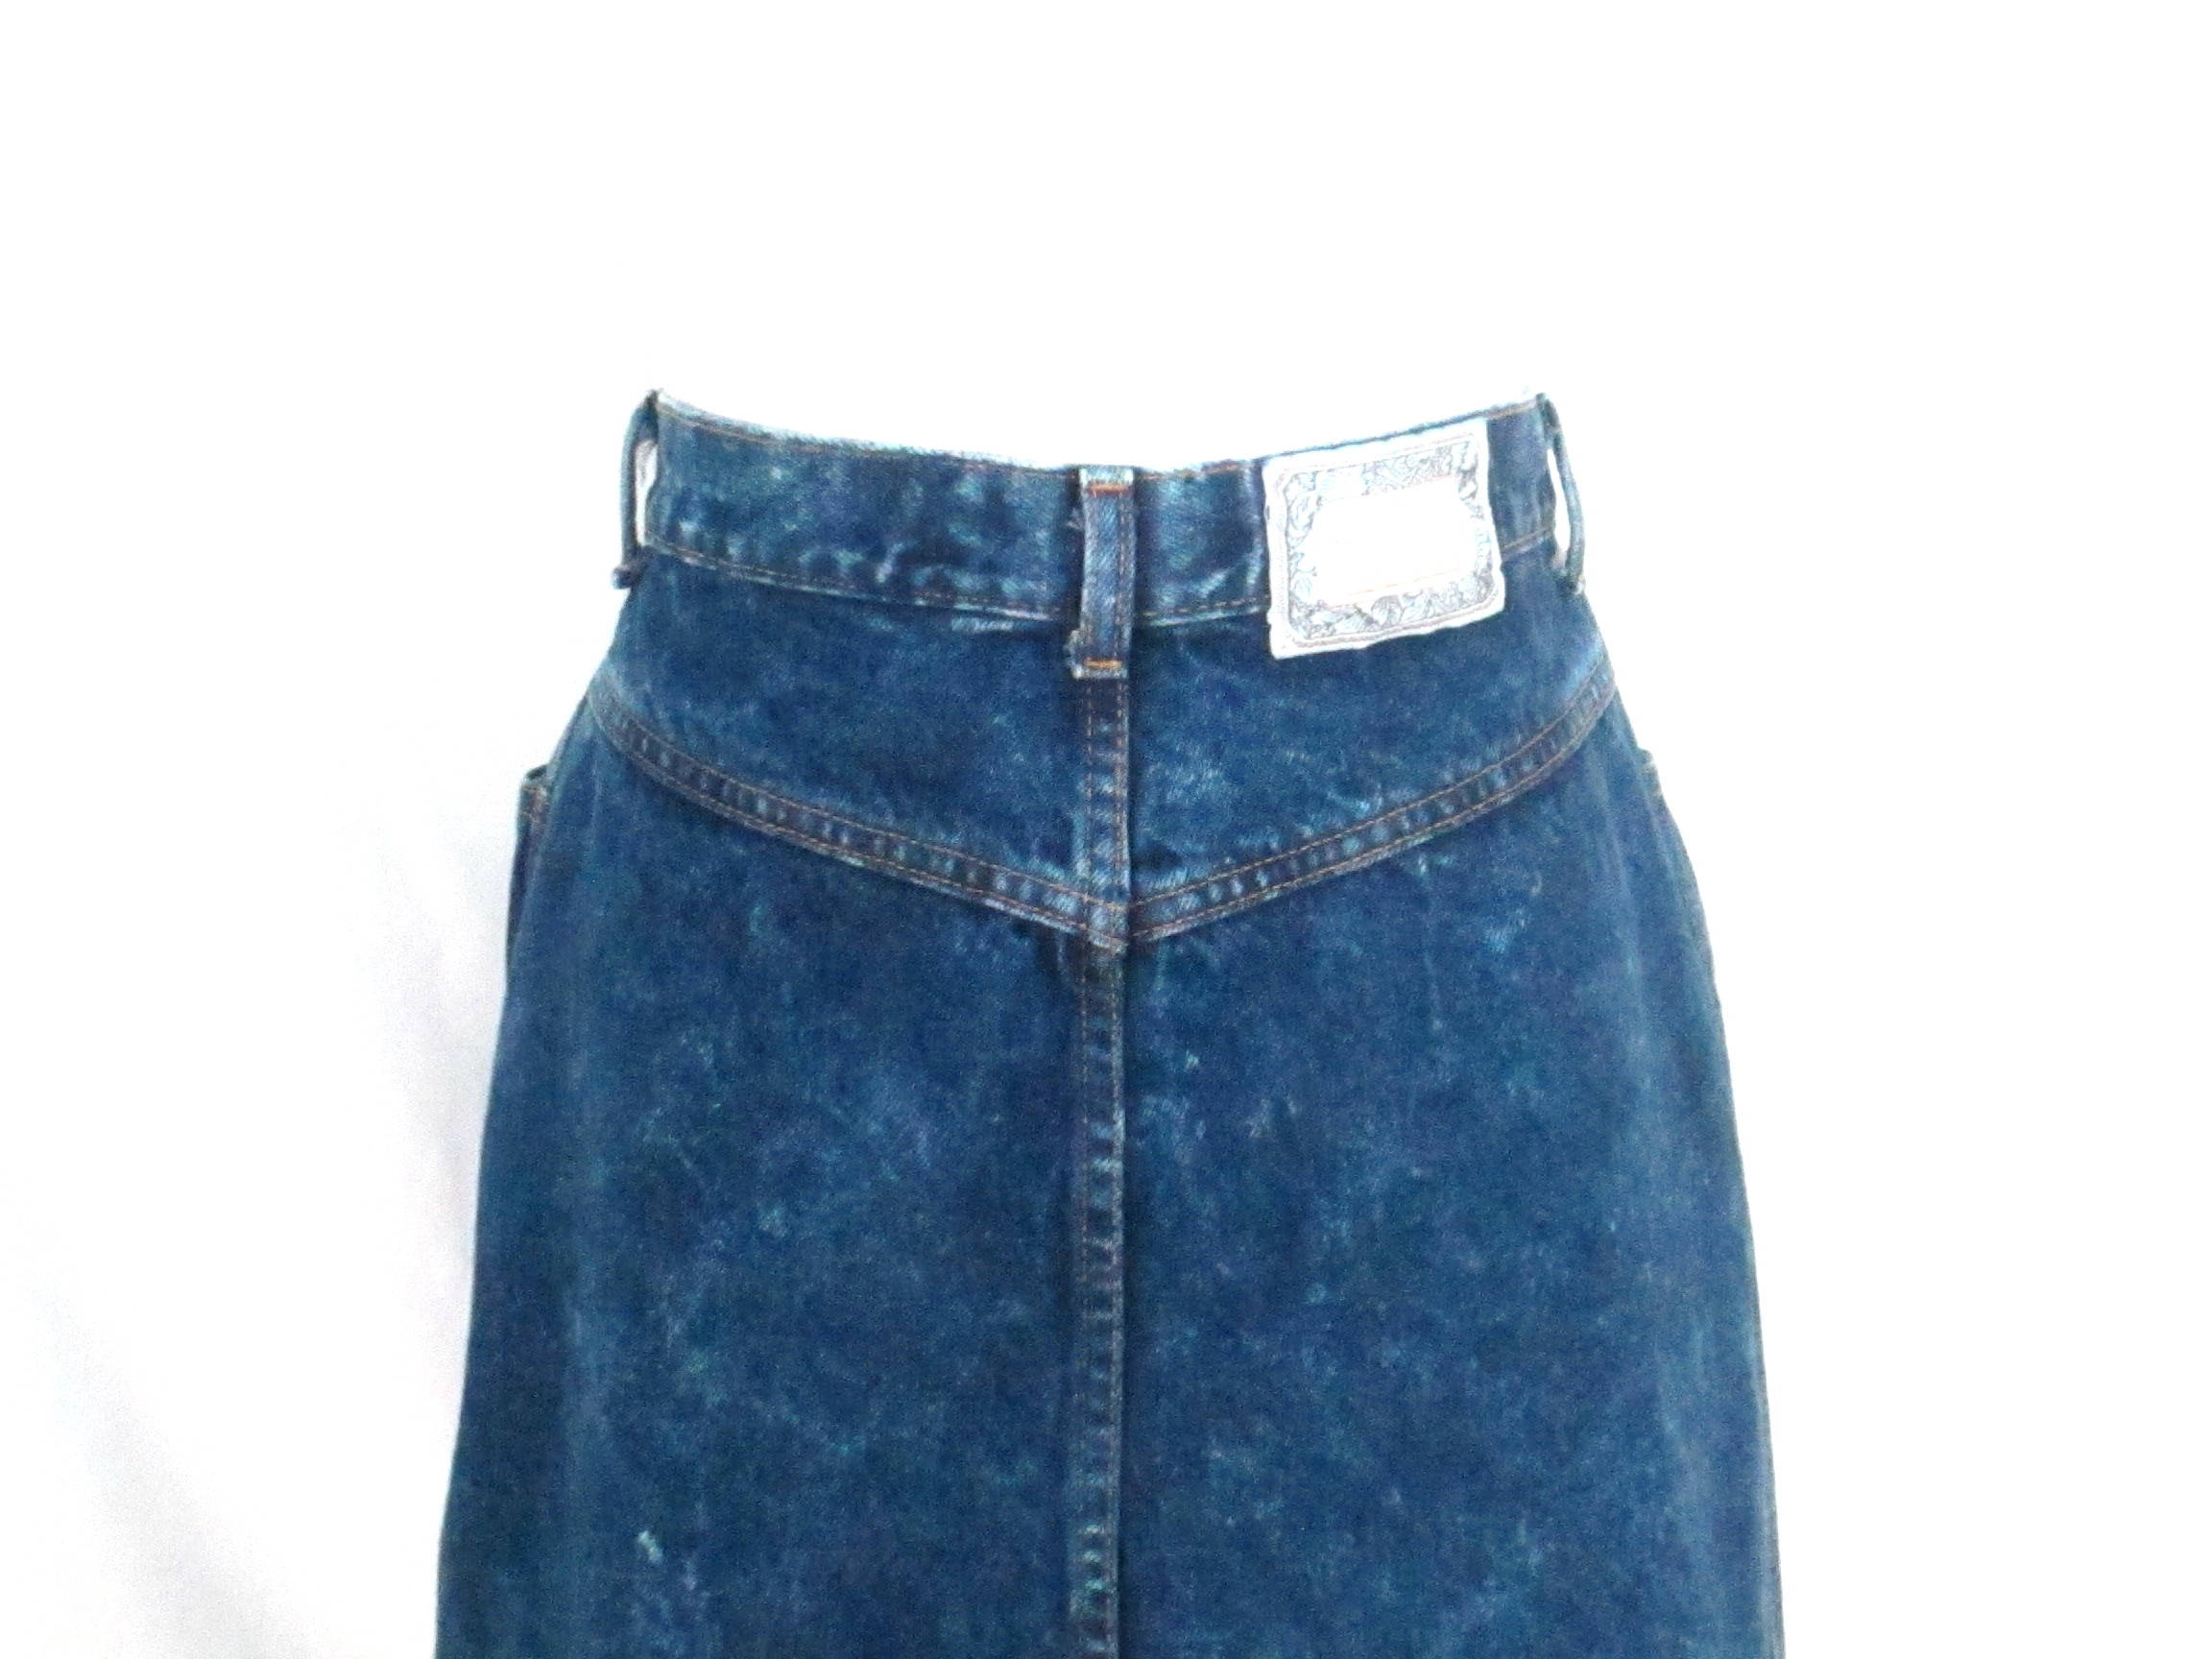 Vintage 90's Bonjour Denim Skirt 1990's Blue Jean - Etsy